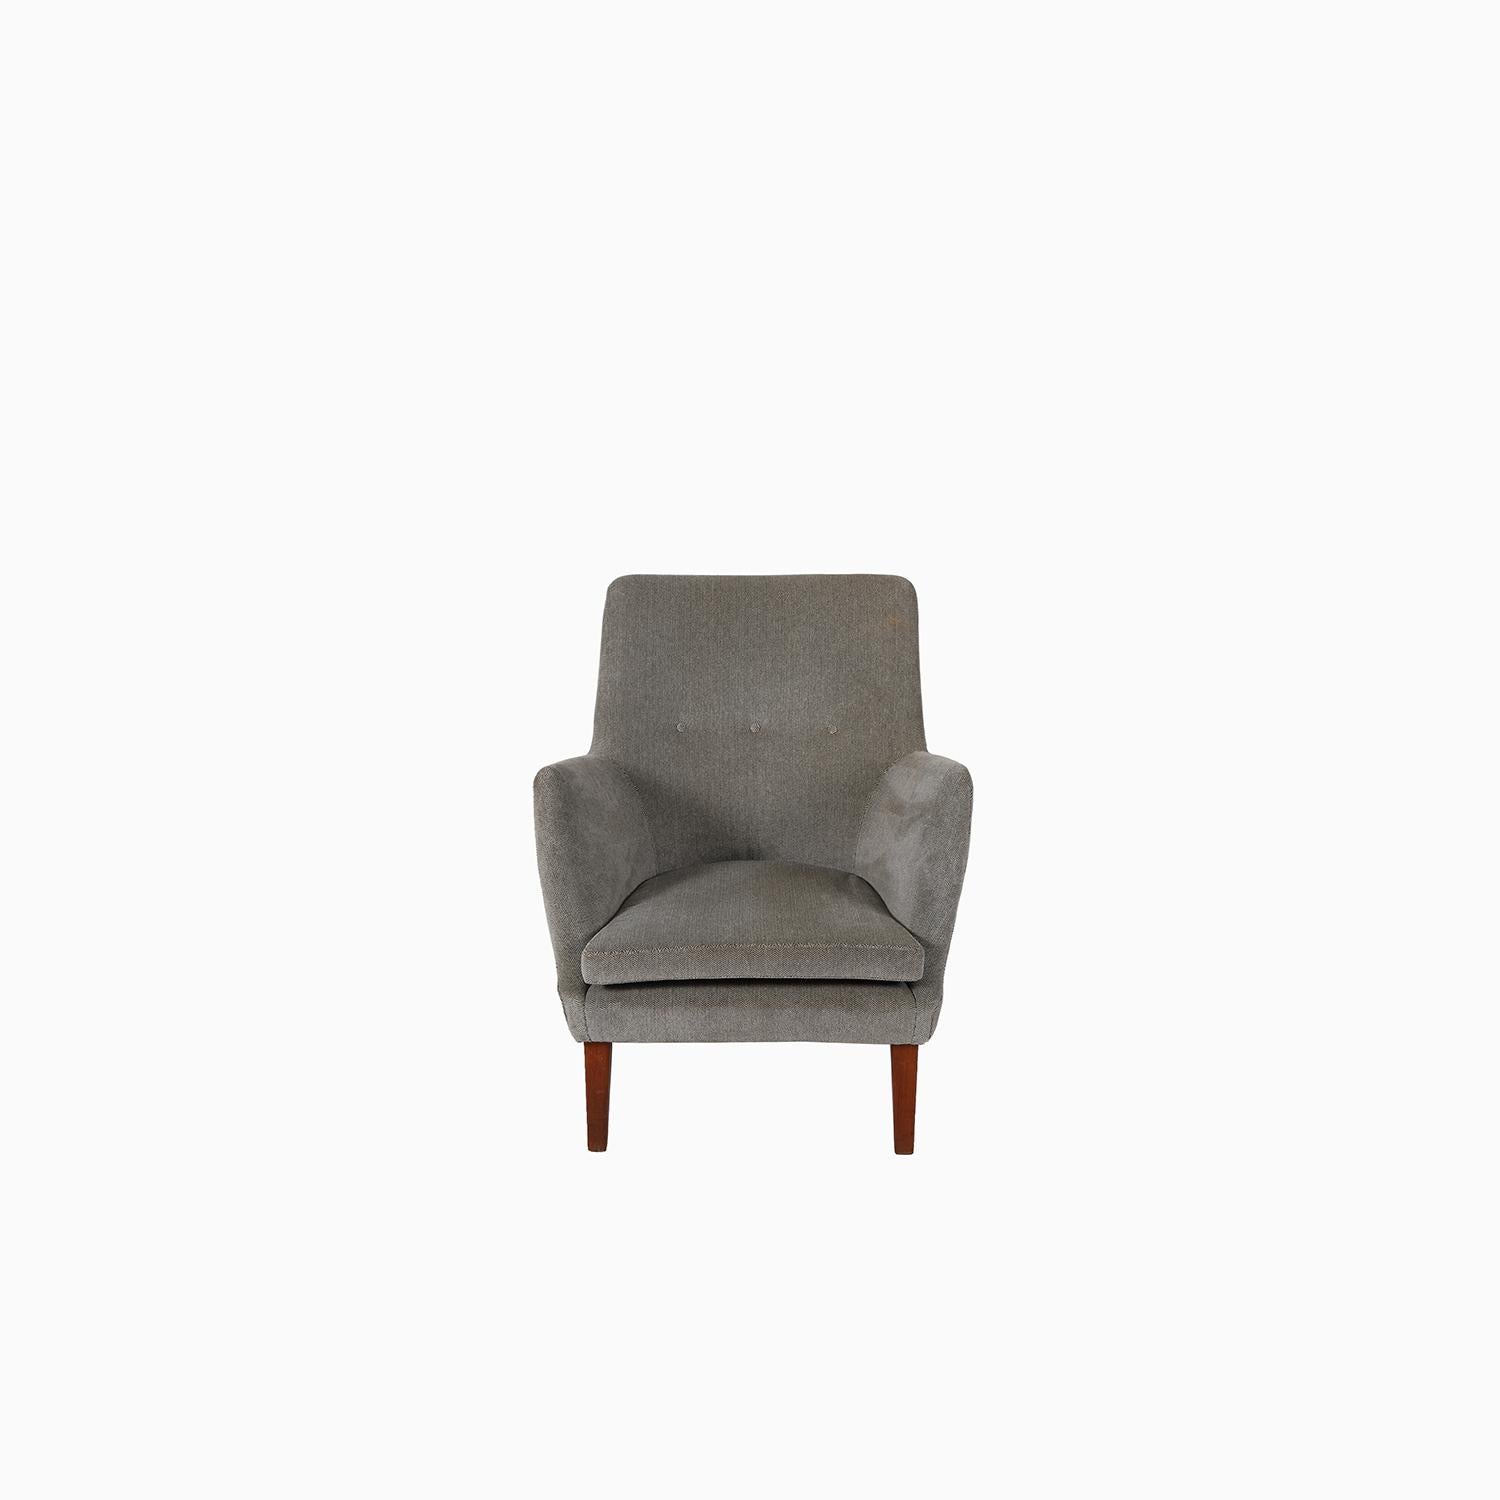 Rare chaise longue AV 53, conçue par Arne Vodder et produite par Ivan Schlechter. Ce design est une forme plus douce et s'inspire d'un vocabulaire de design plus traditionnel. Un beau raffinement. A vendre avec la sellerie existante, ou nous sommes